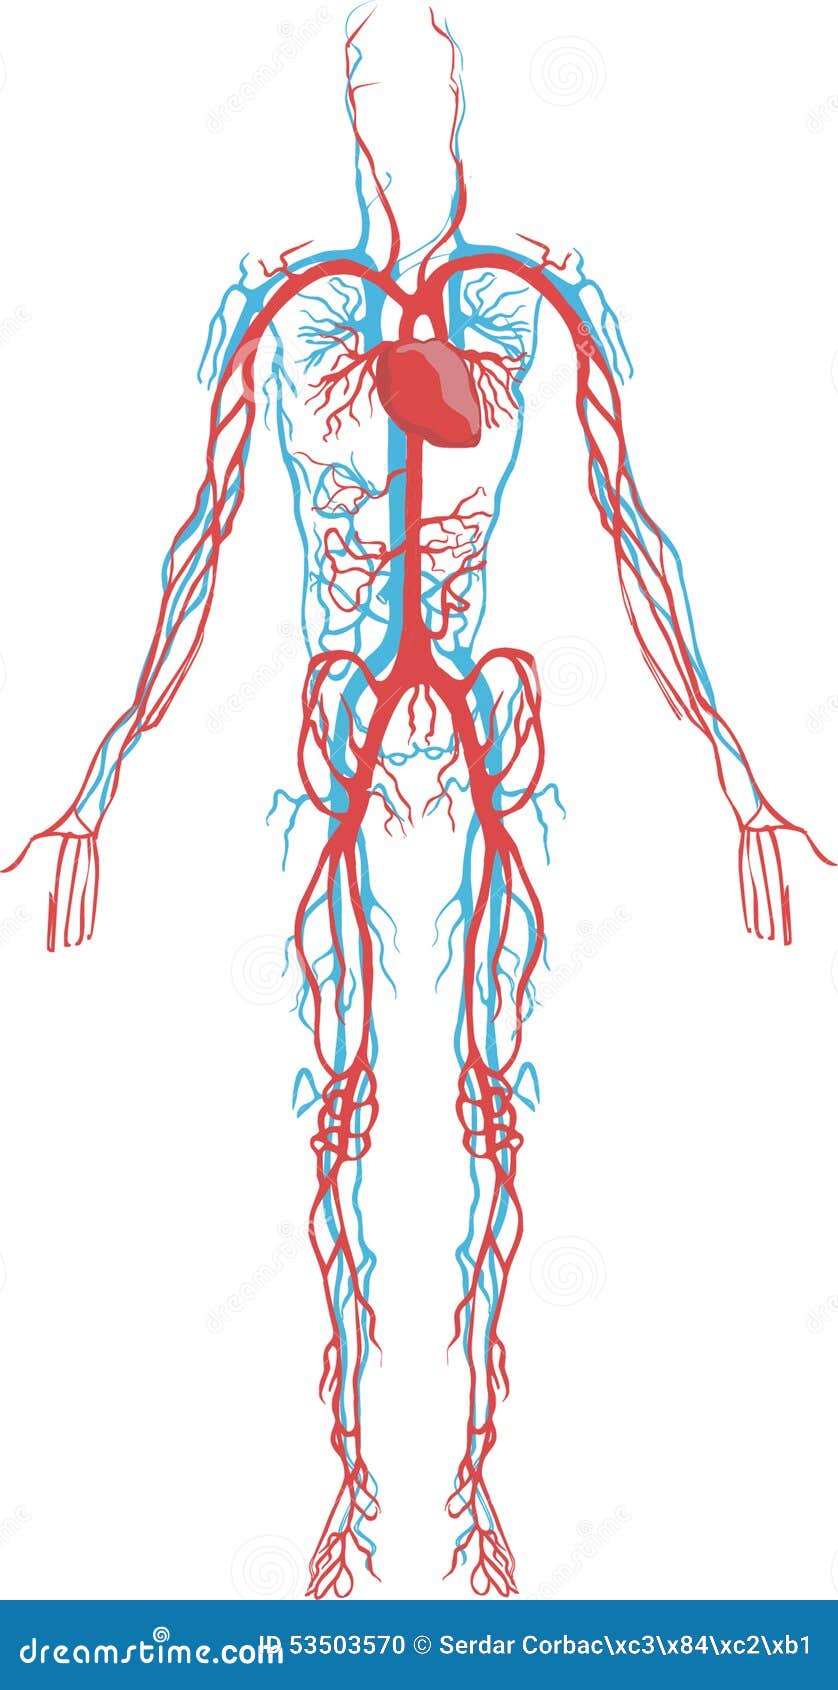 Воды сосуды человека. Кровеносная система в теле человека. Система кровообращения человека кровеносные сосуды. Система кровообращения человека сердце и кровеносные сосуды. Кровеносная система человека анатомия.